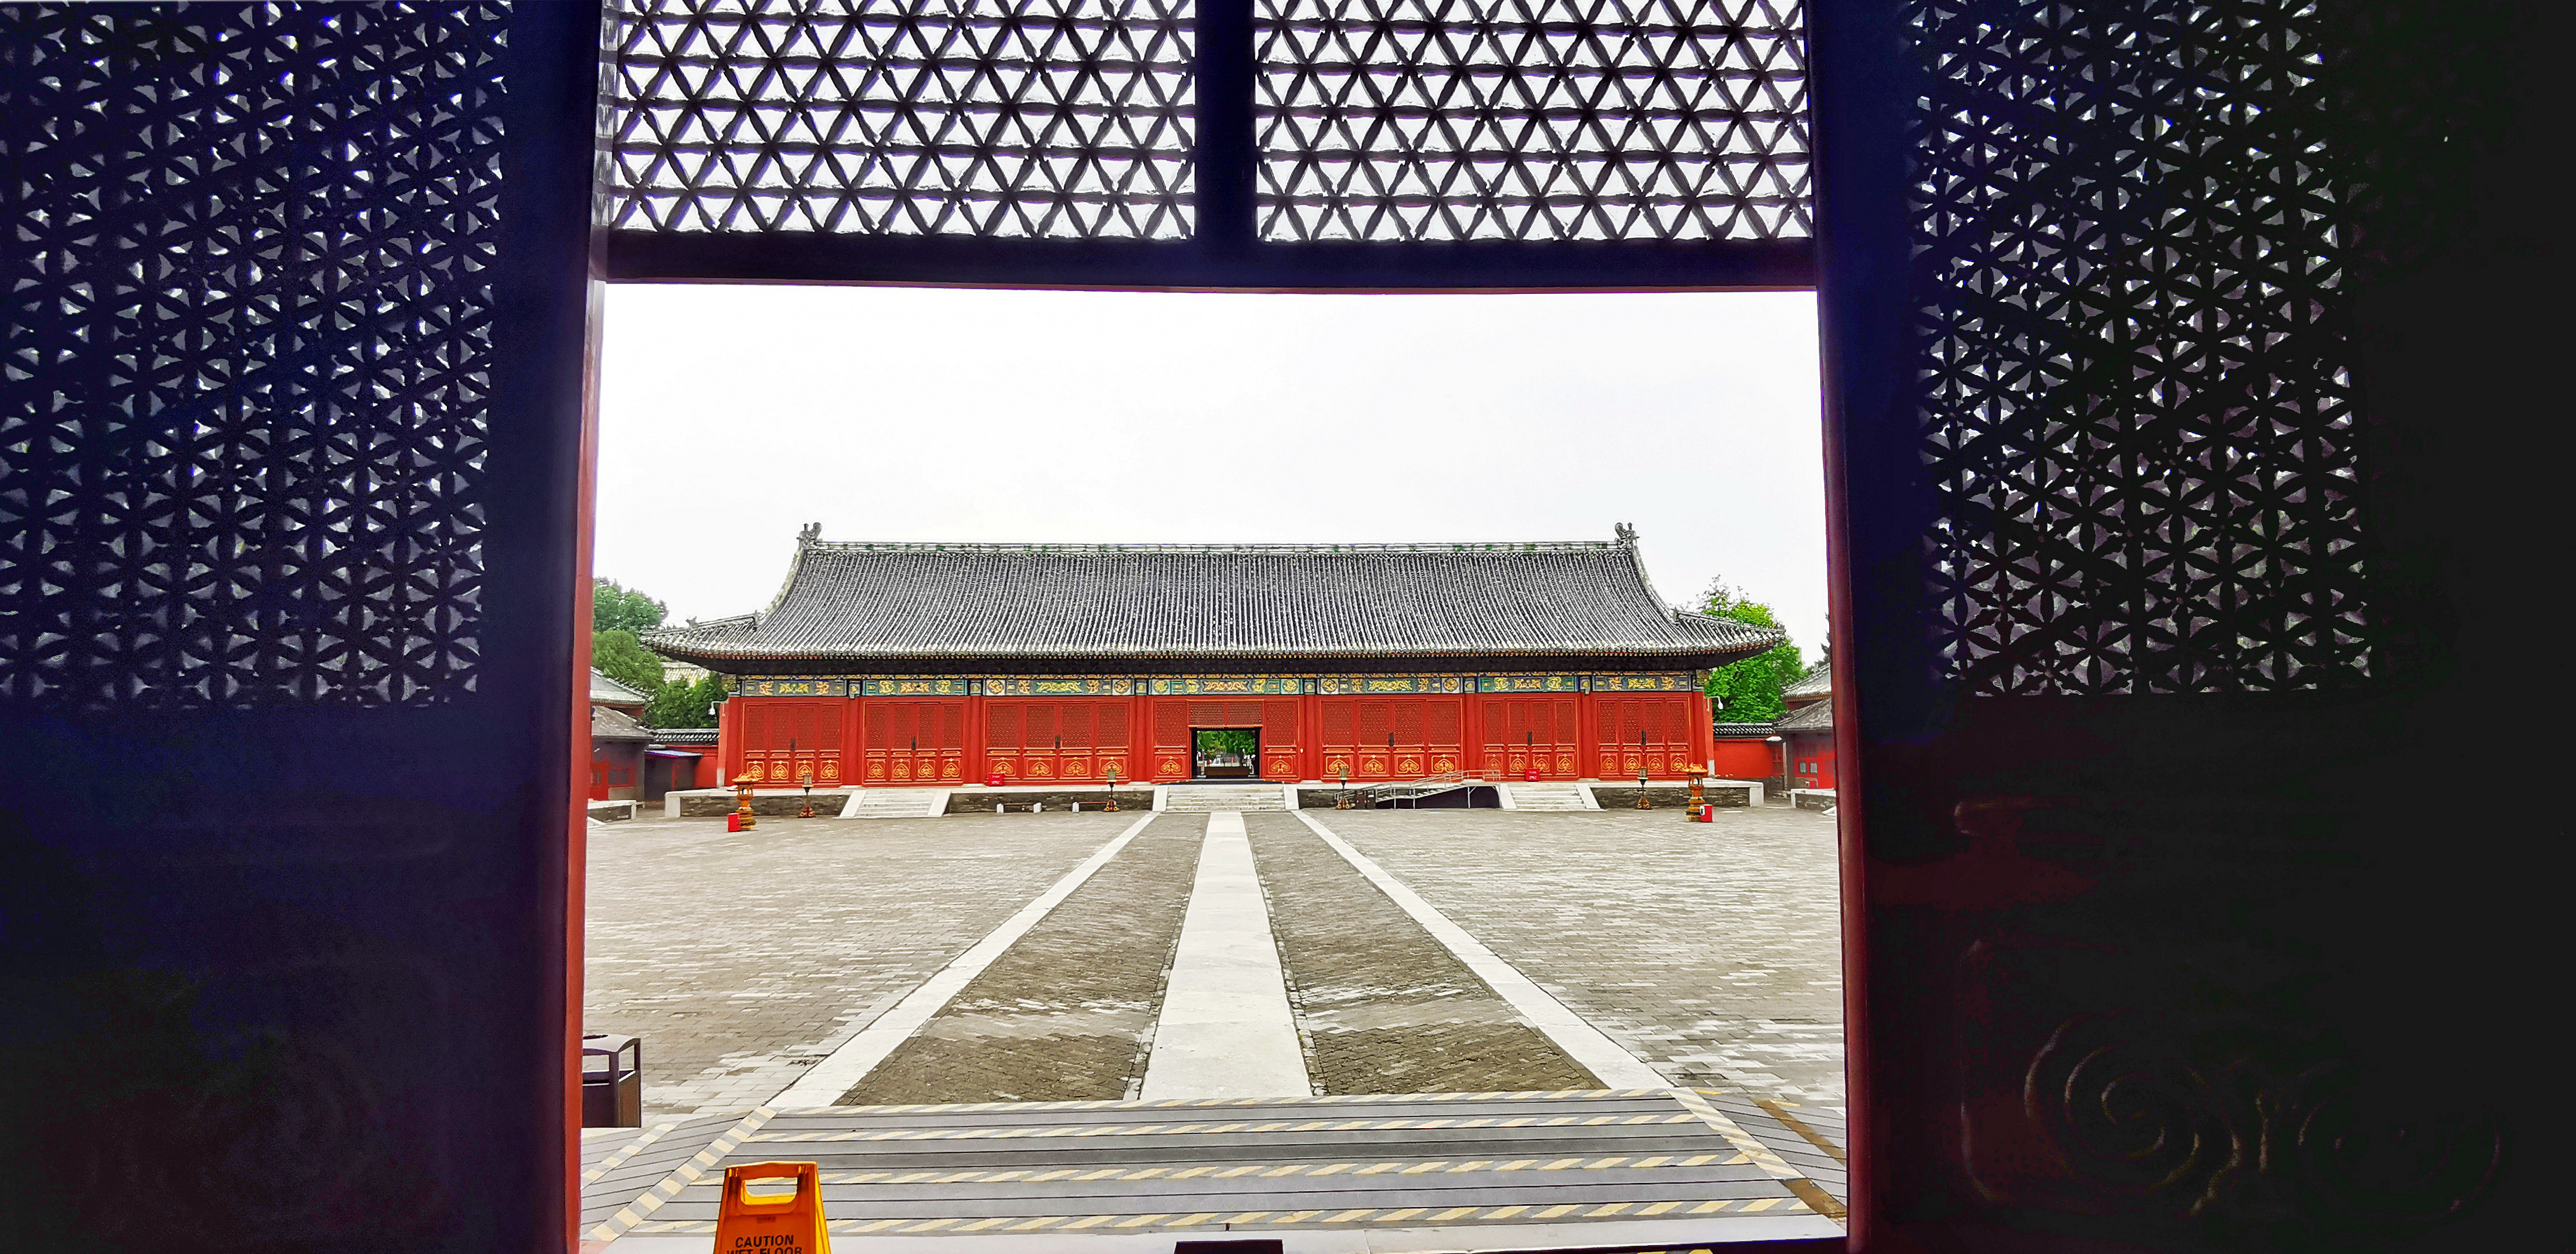 北京先农坛与北京古代建筑博物馆